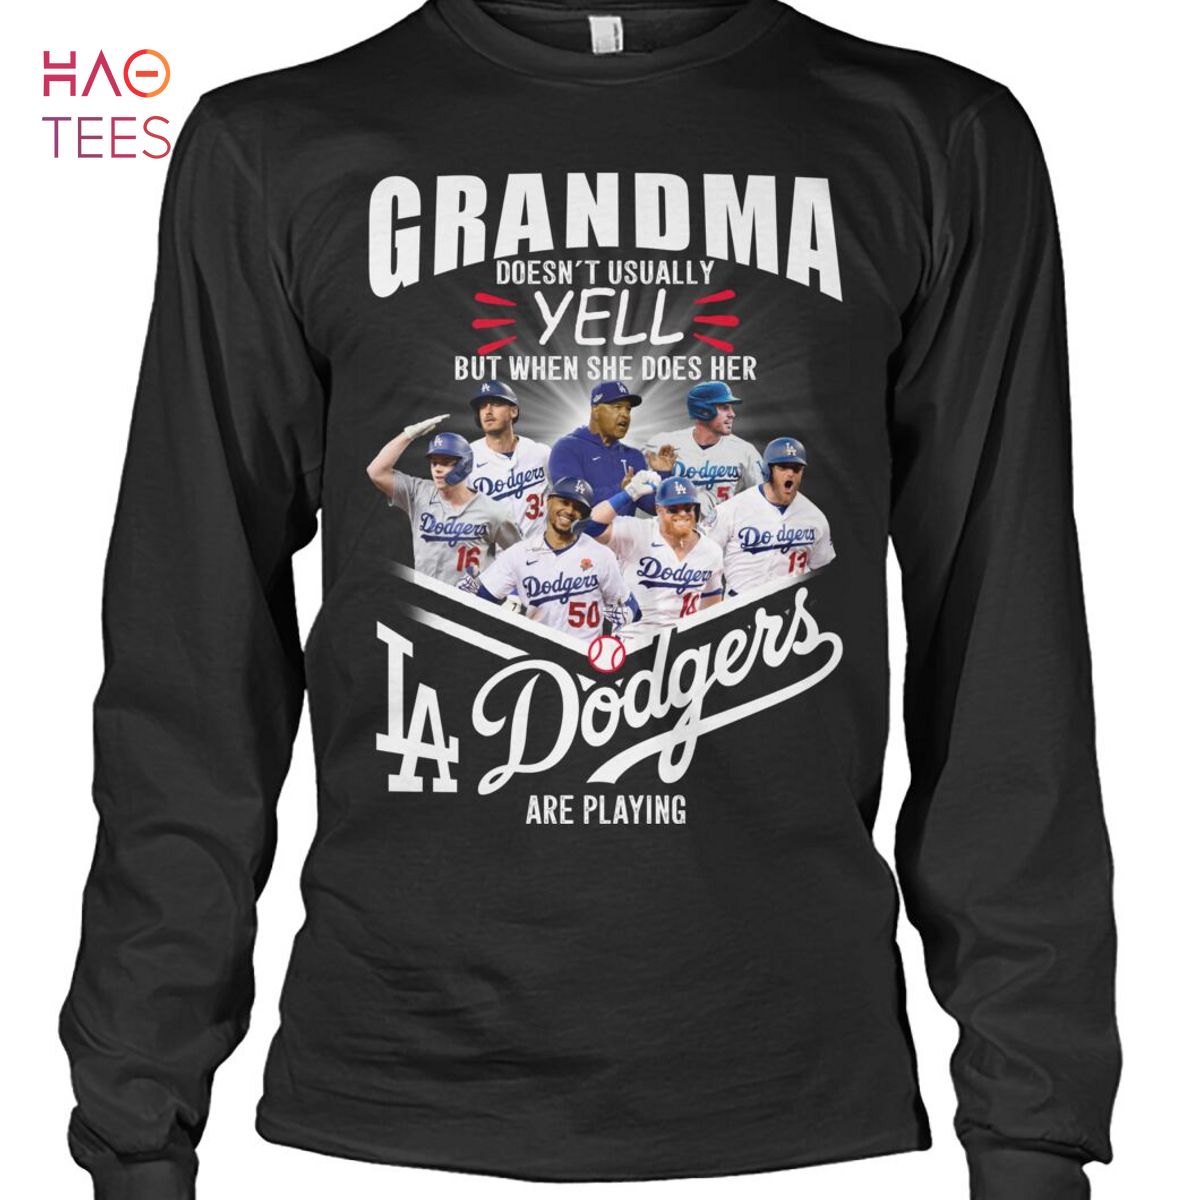 Dodgers Plus Size Tee Shirt Dress Los Angeles Dodgers Plus 